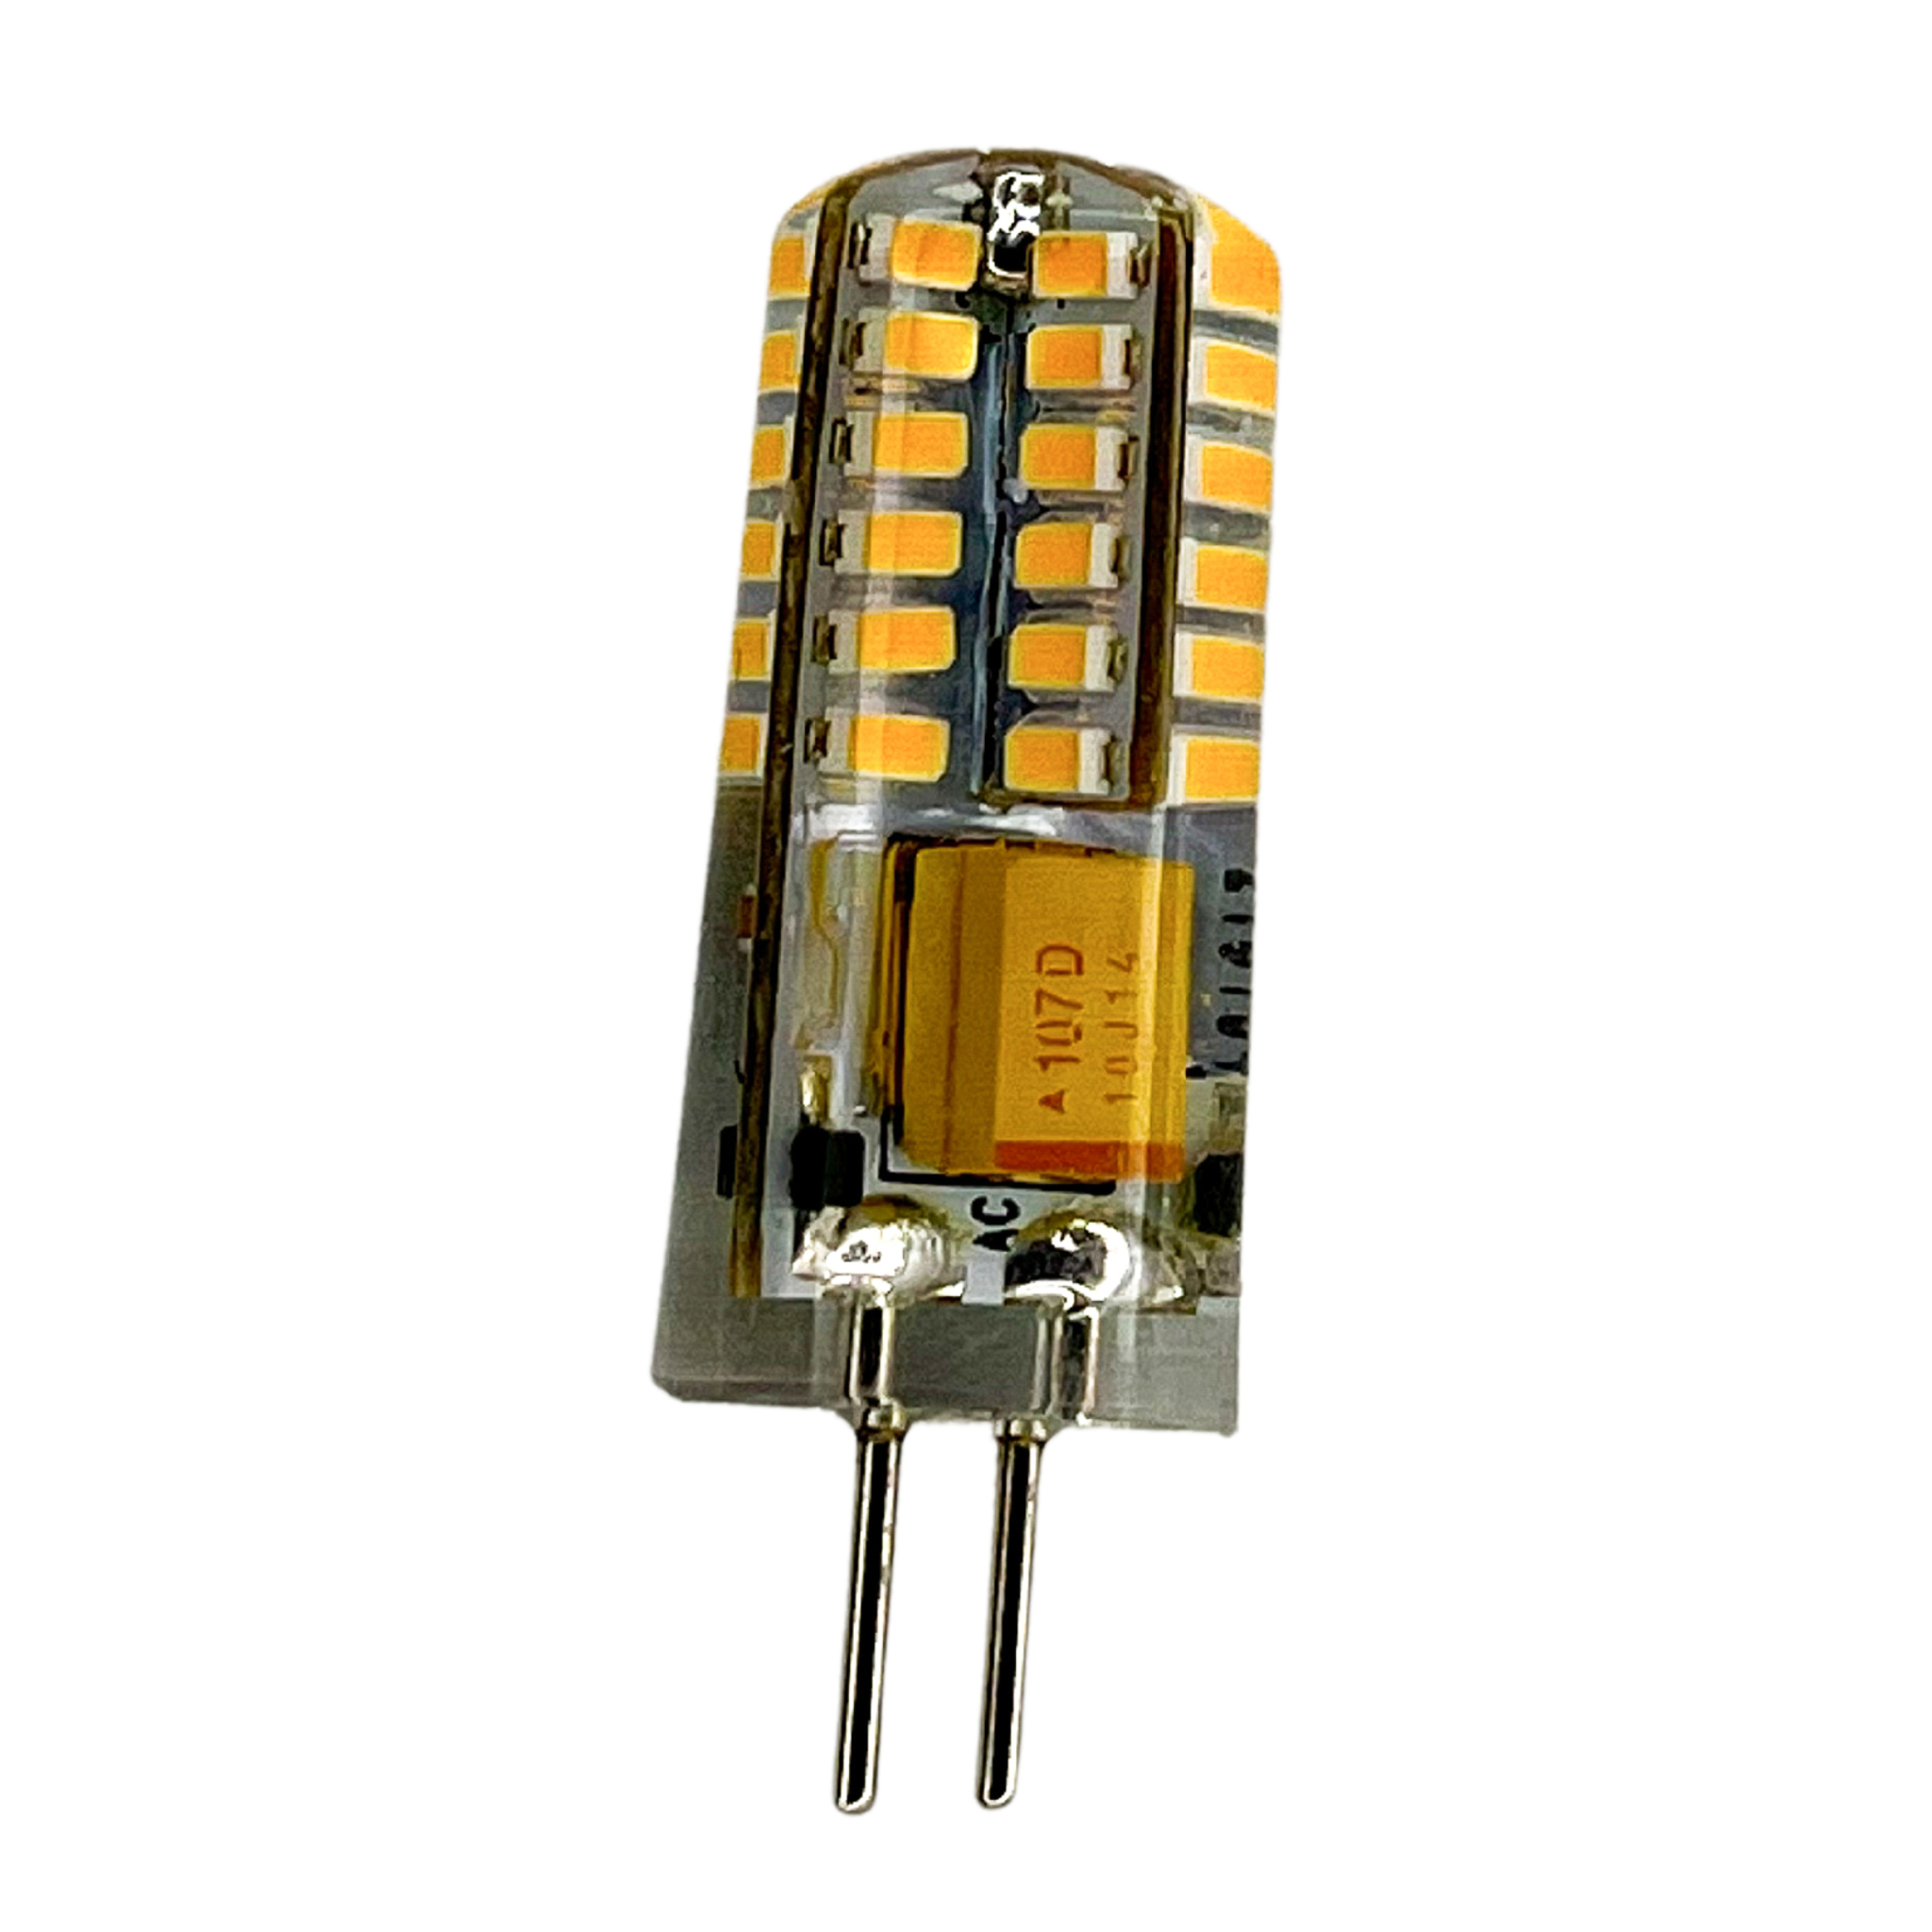 Ampoule G4 4W bi-pin